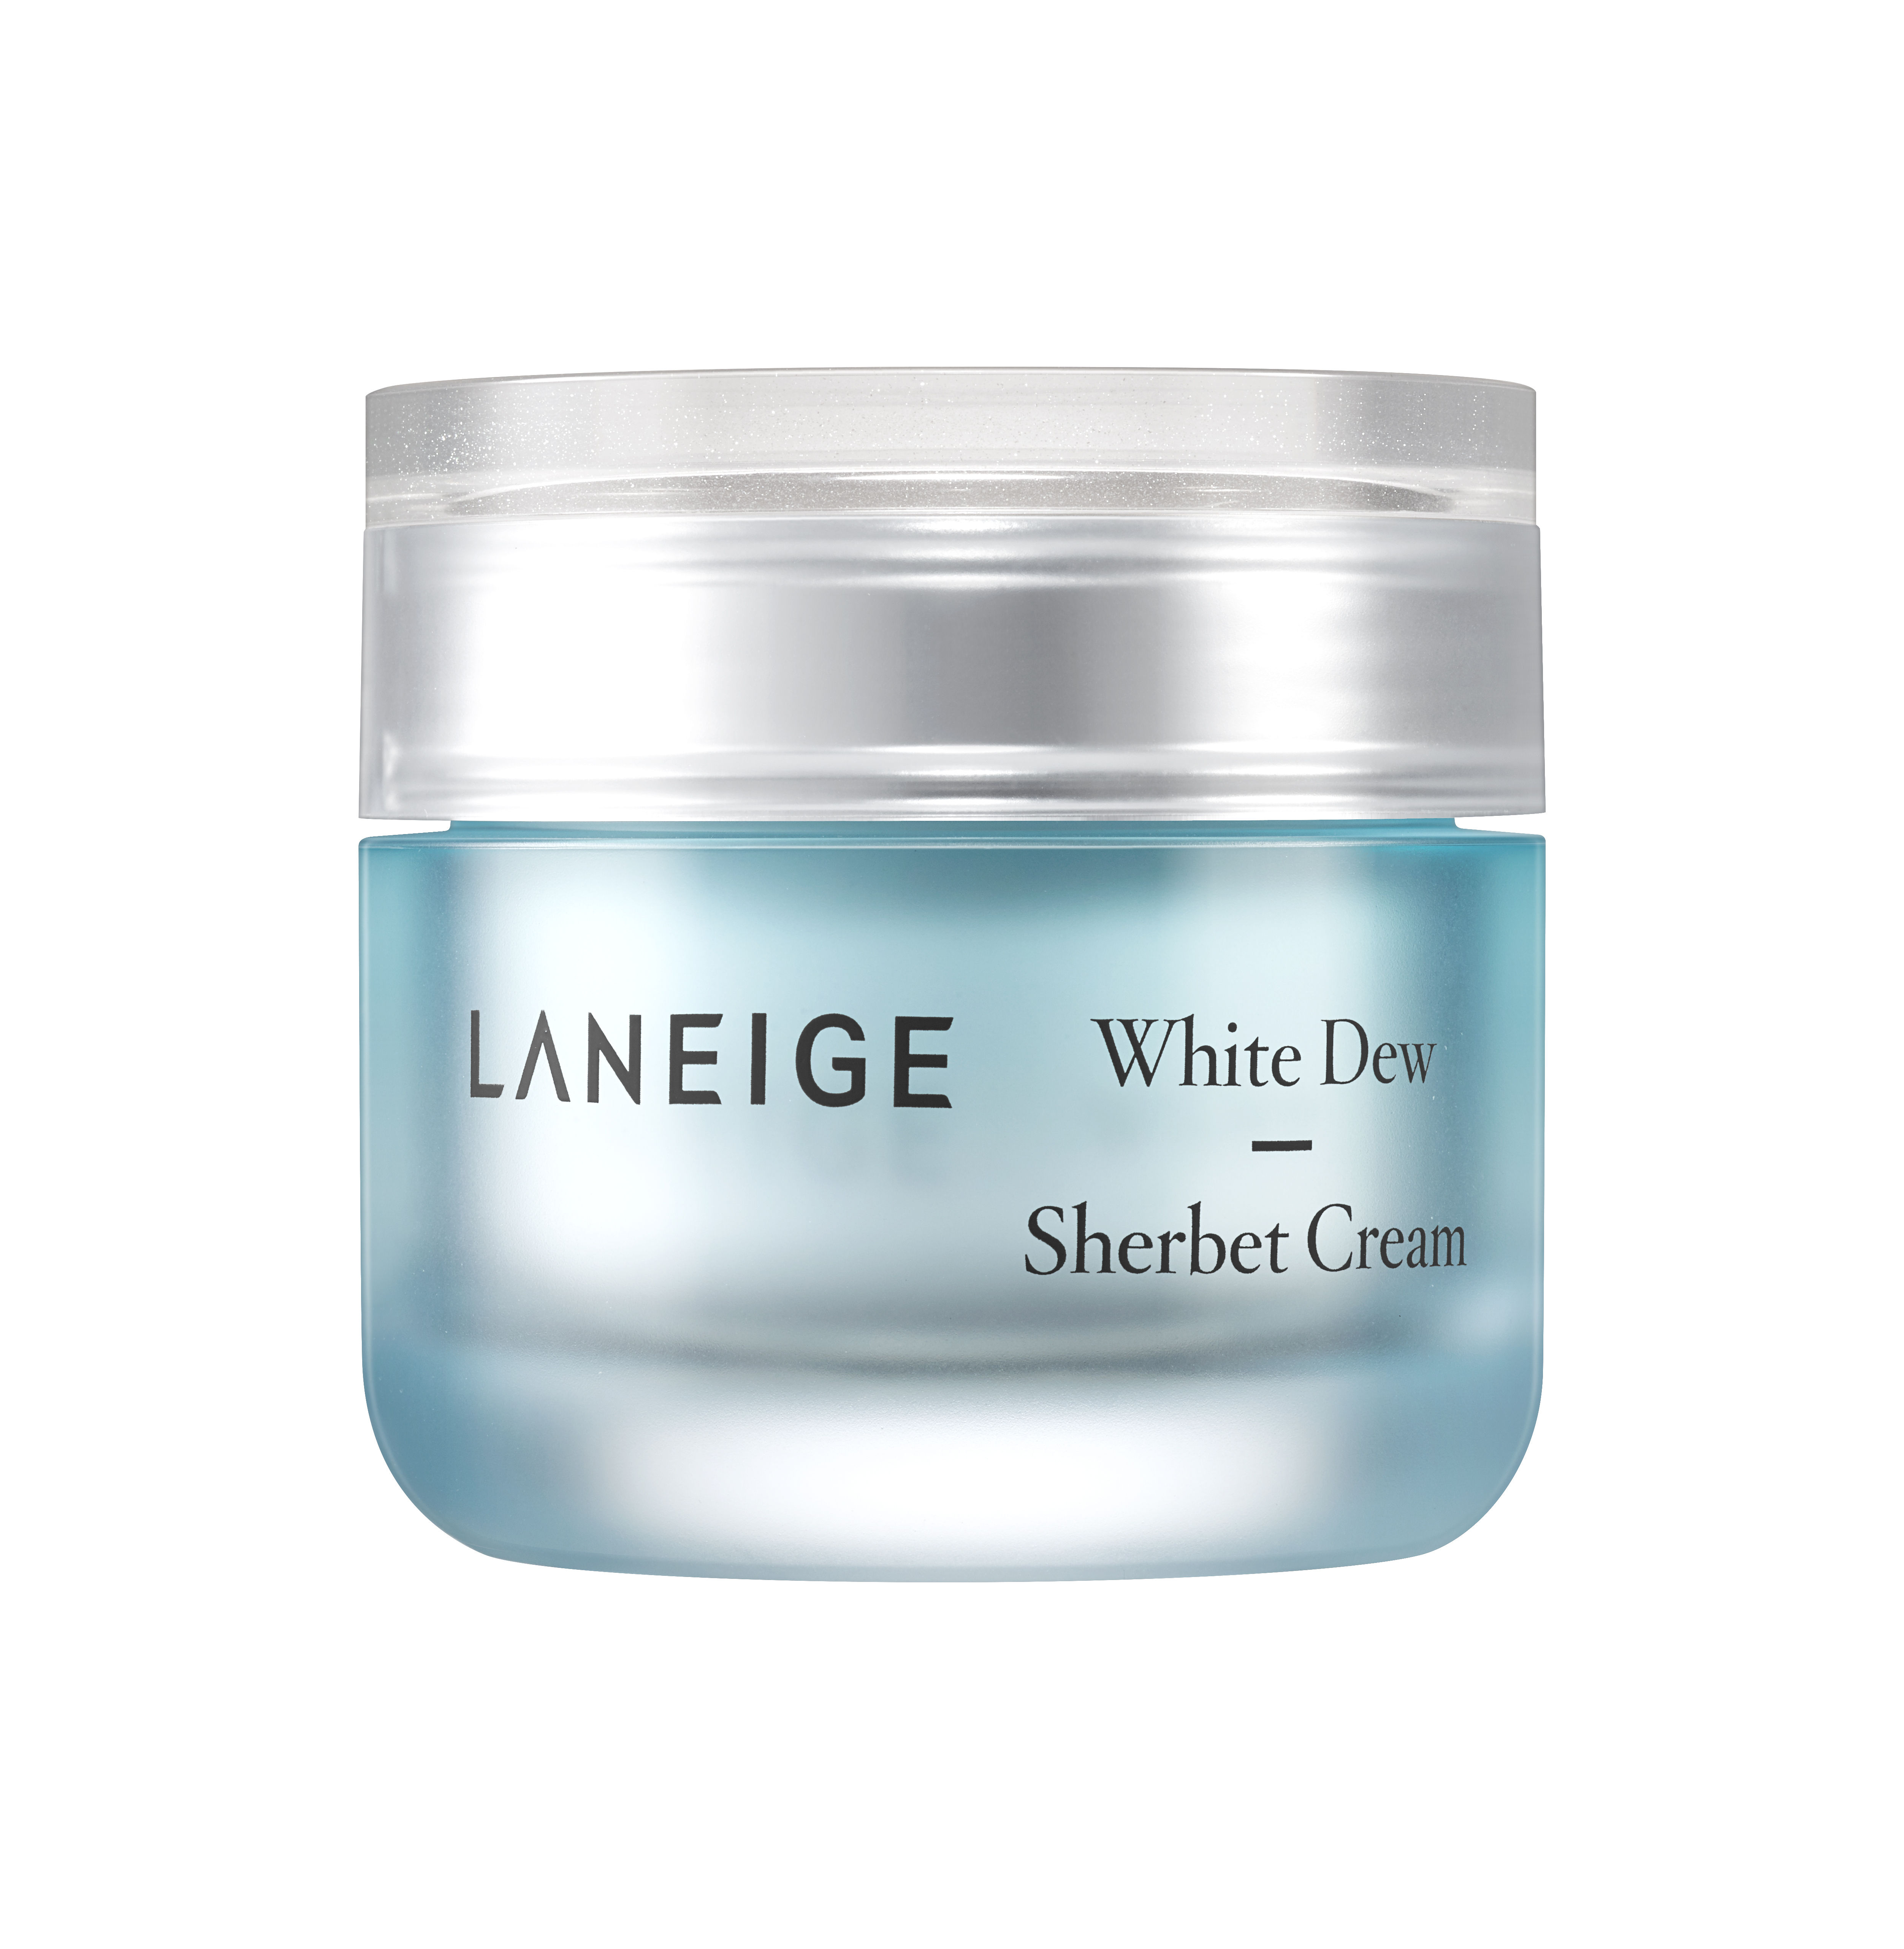 Laneige's White Dew Sherbet Cream